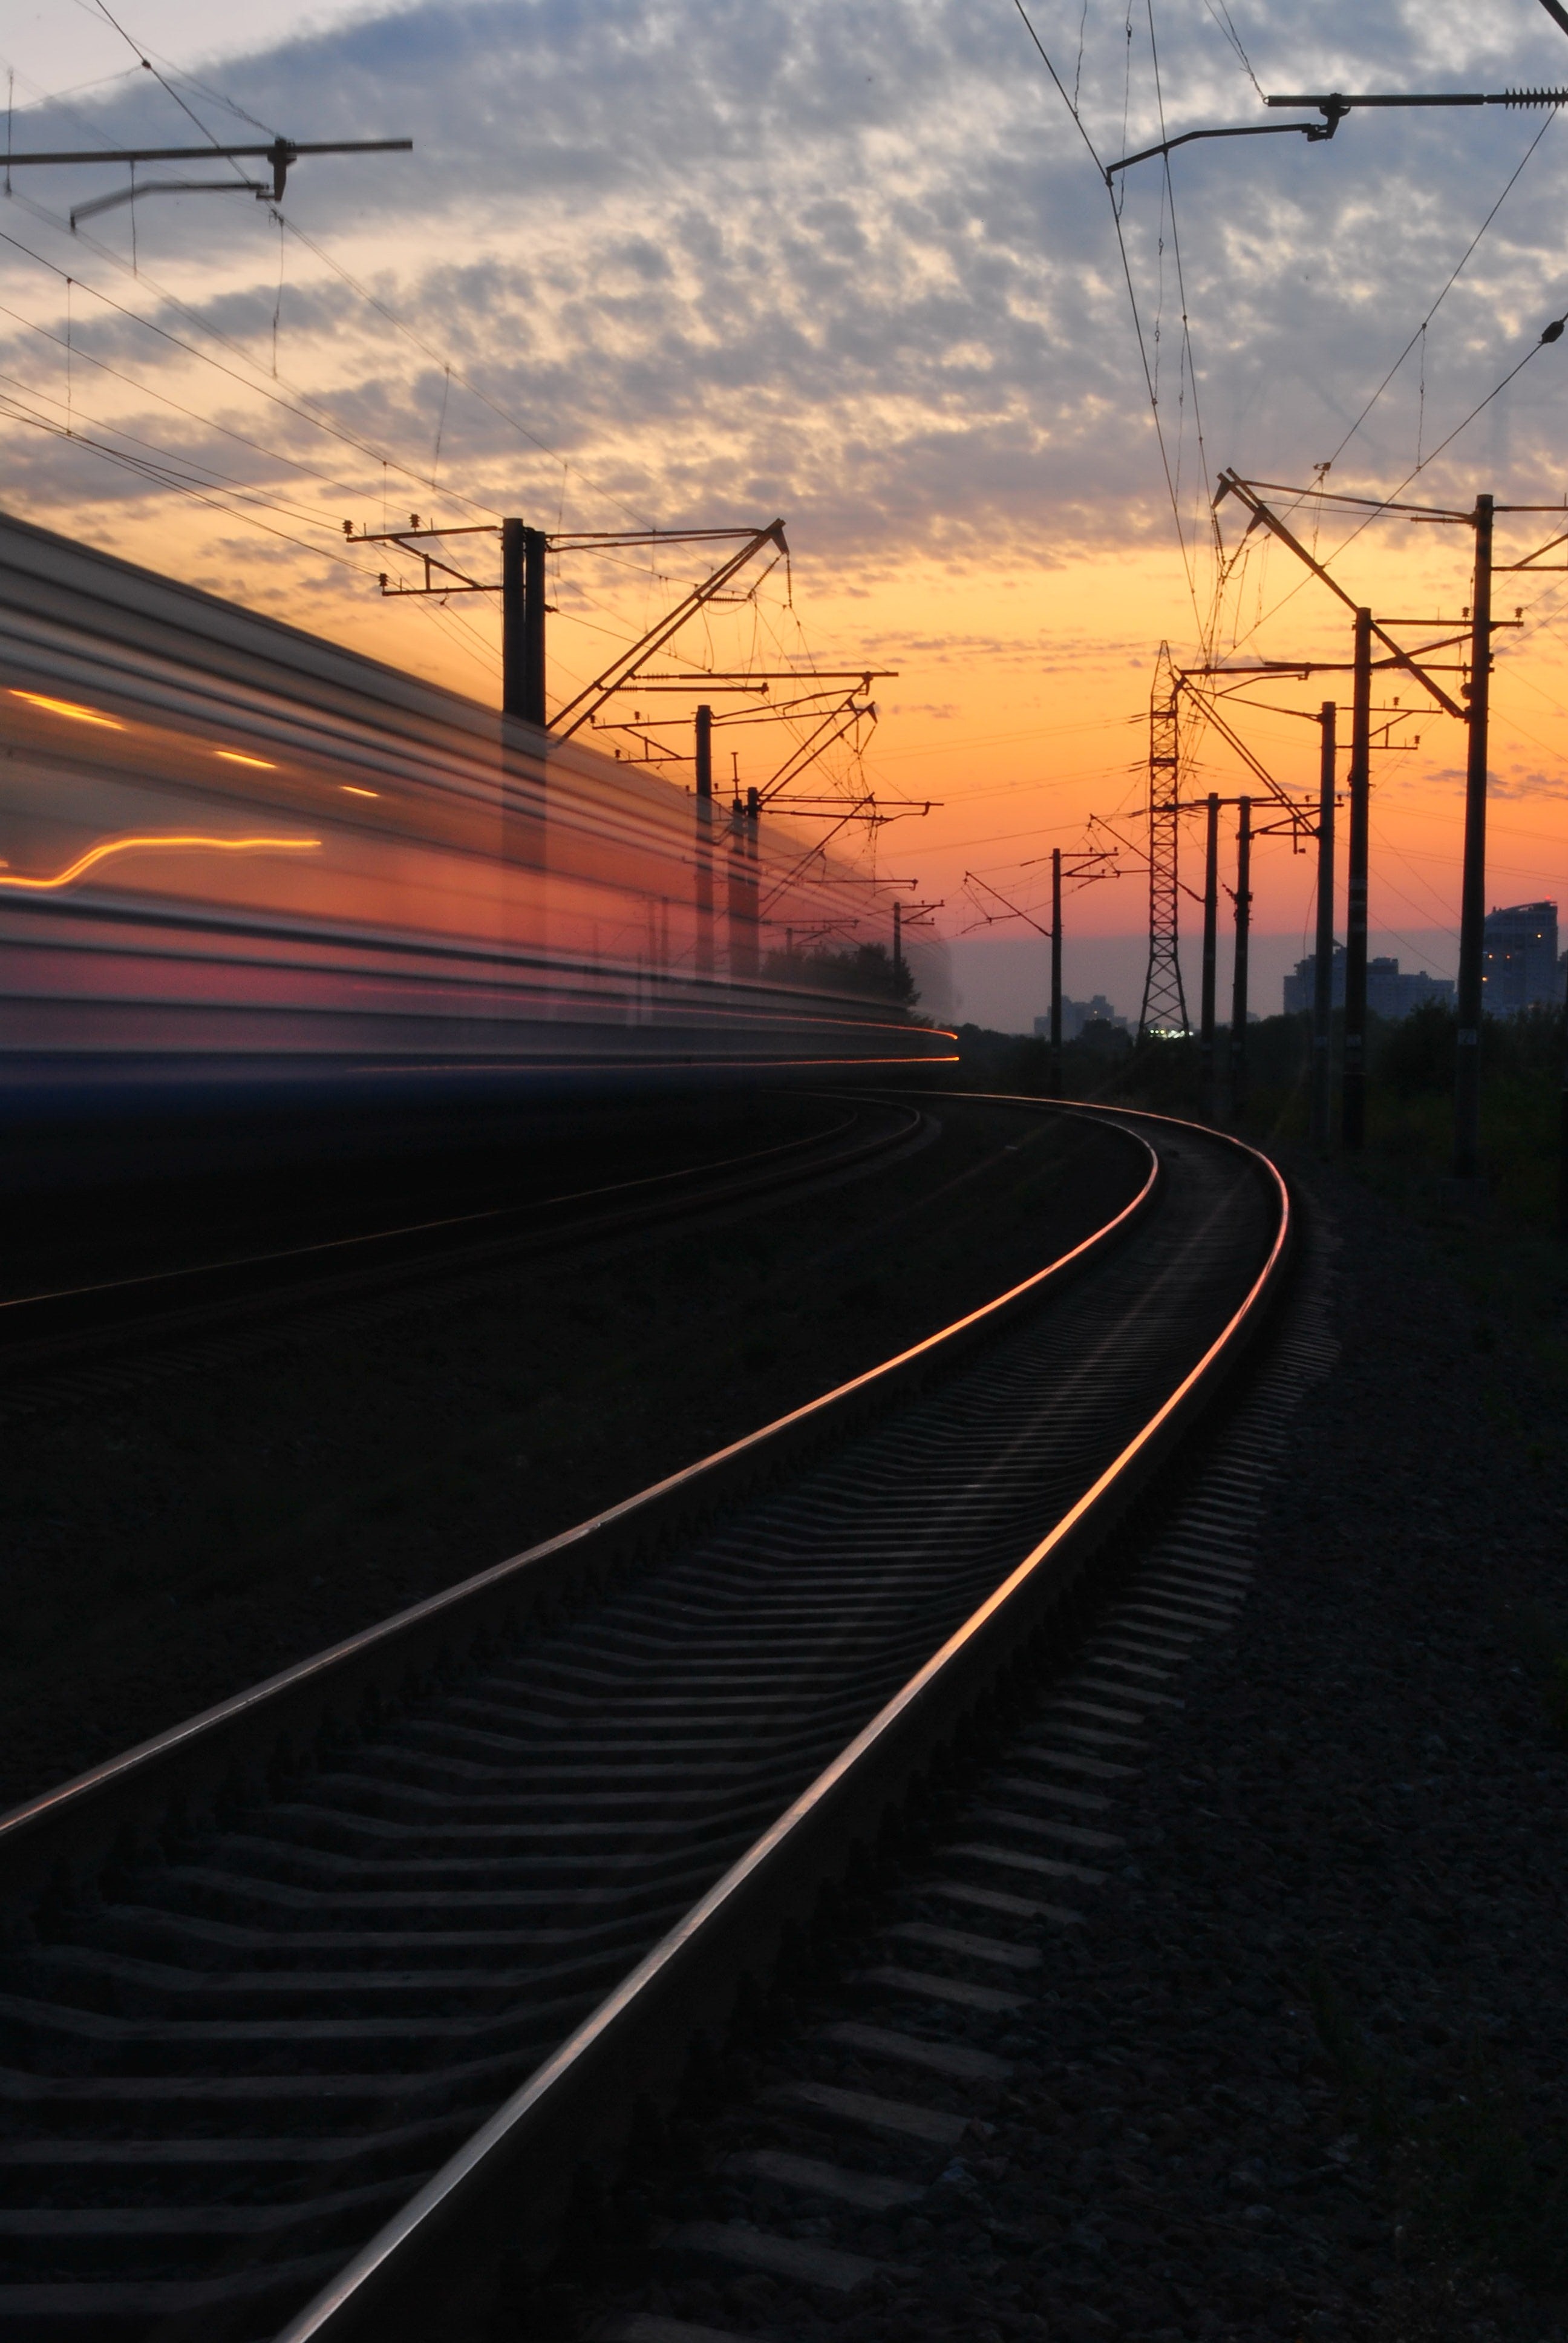 Szándéknyilatkozatot írtak alá vasúttársaságok vezérigazgatói az európai vasutak fejlesztéséről